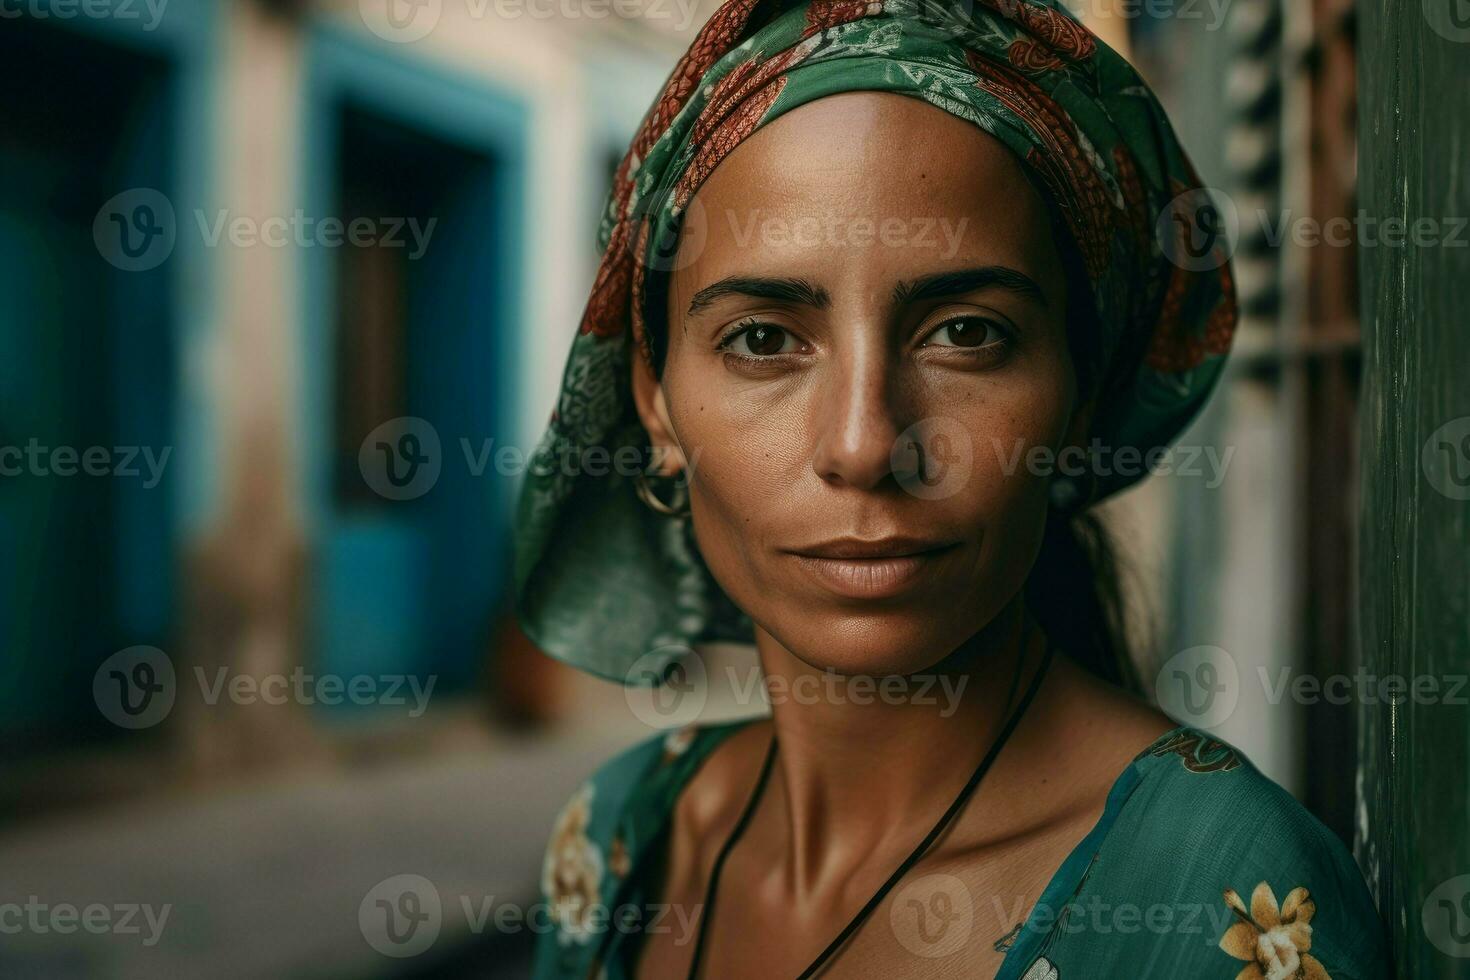 Cuban woman photo. Generate Ai photo